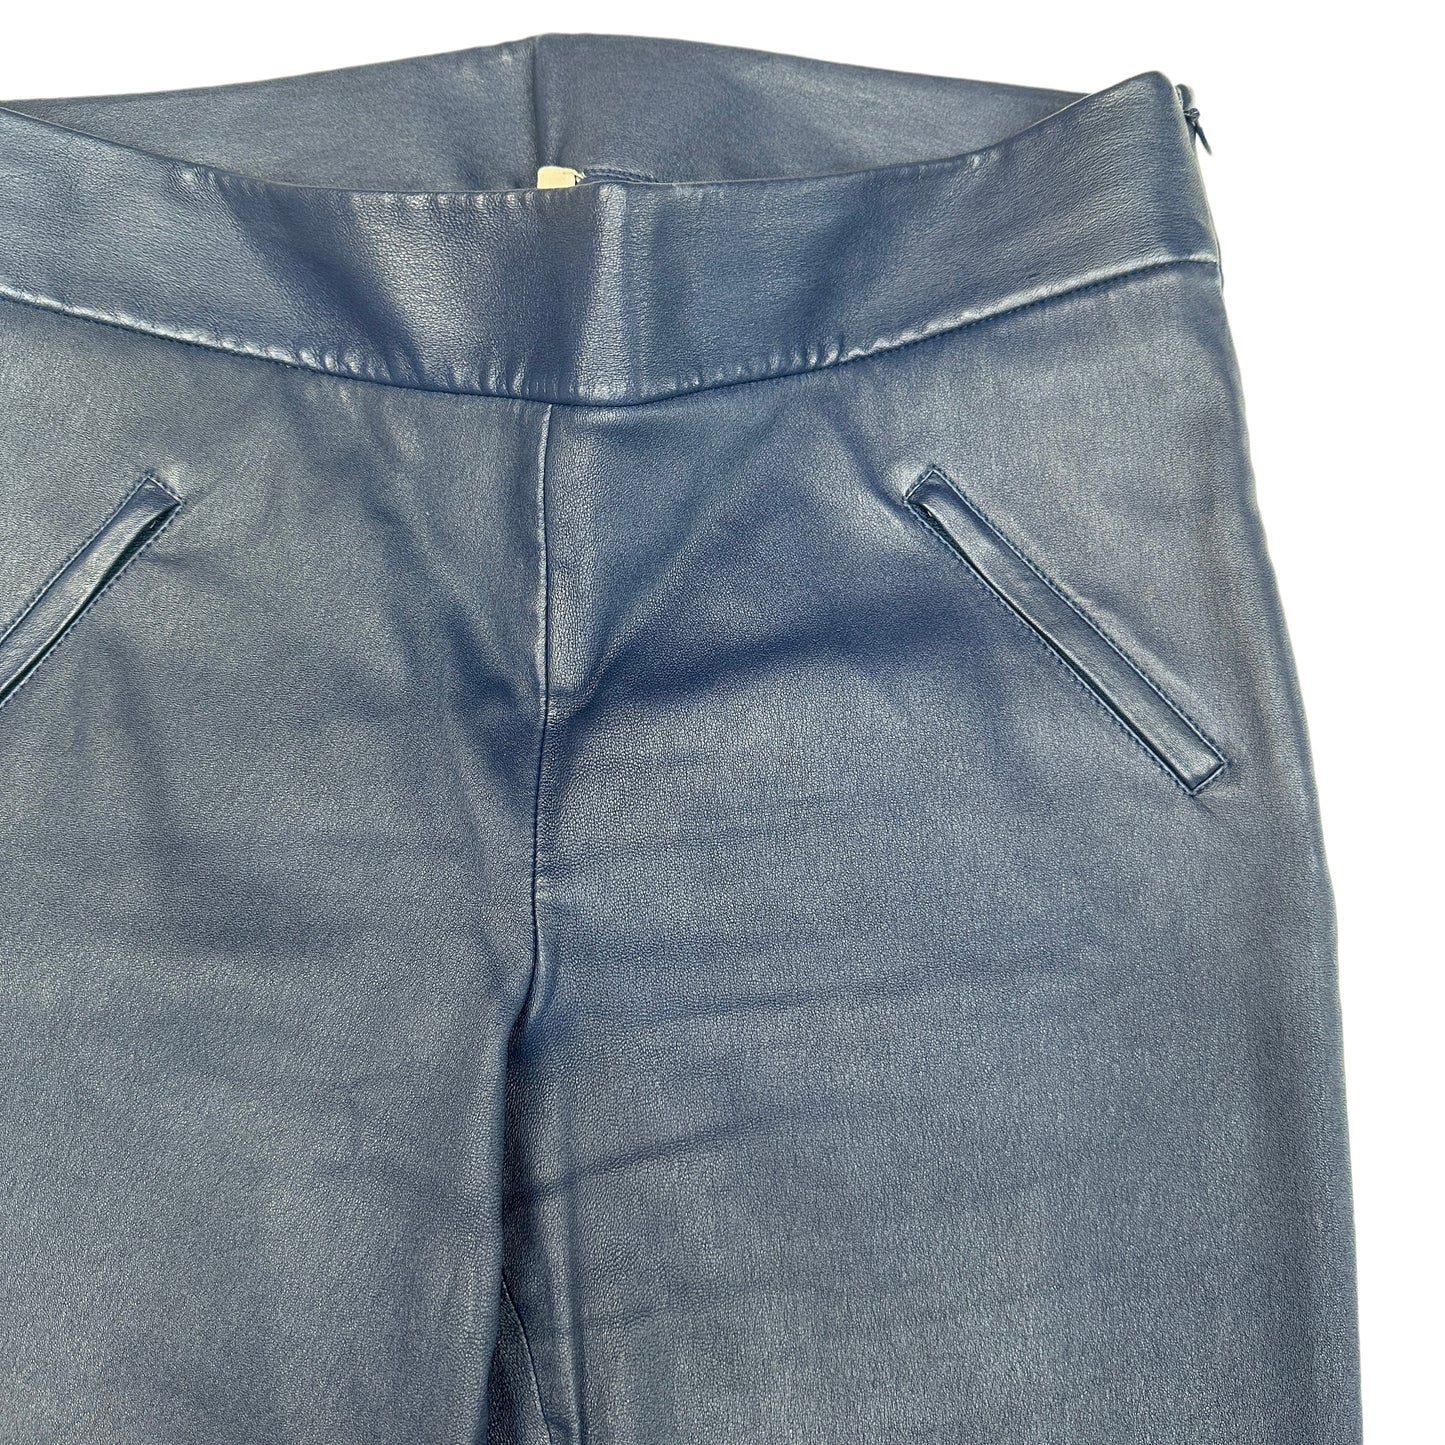 Blue Leather Pants - M